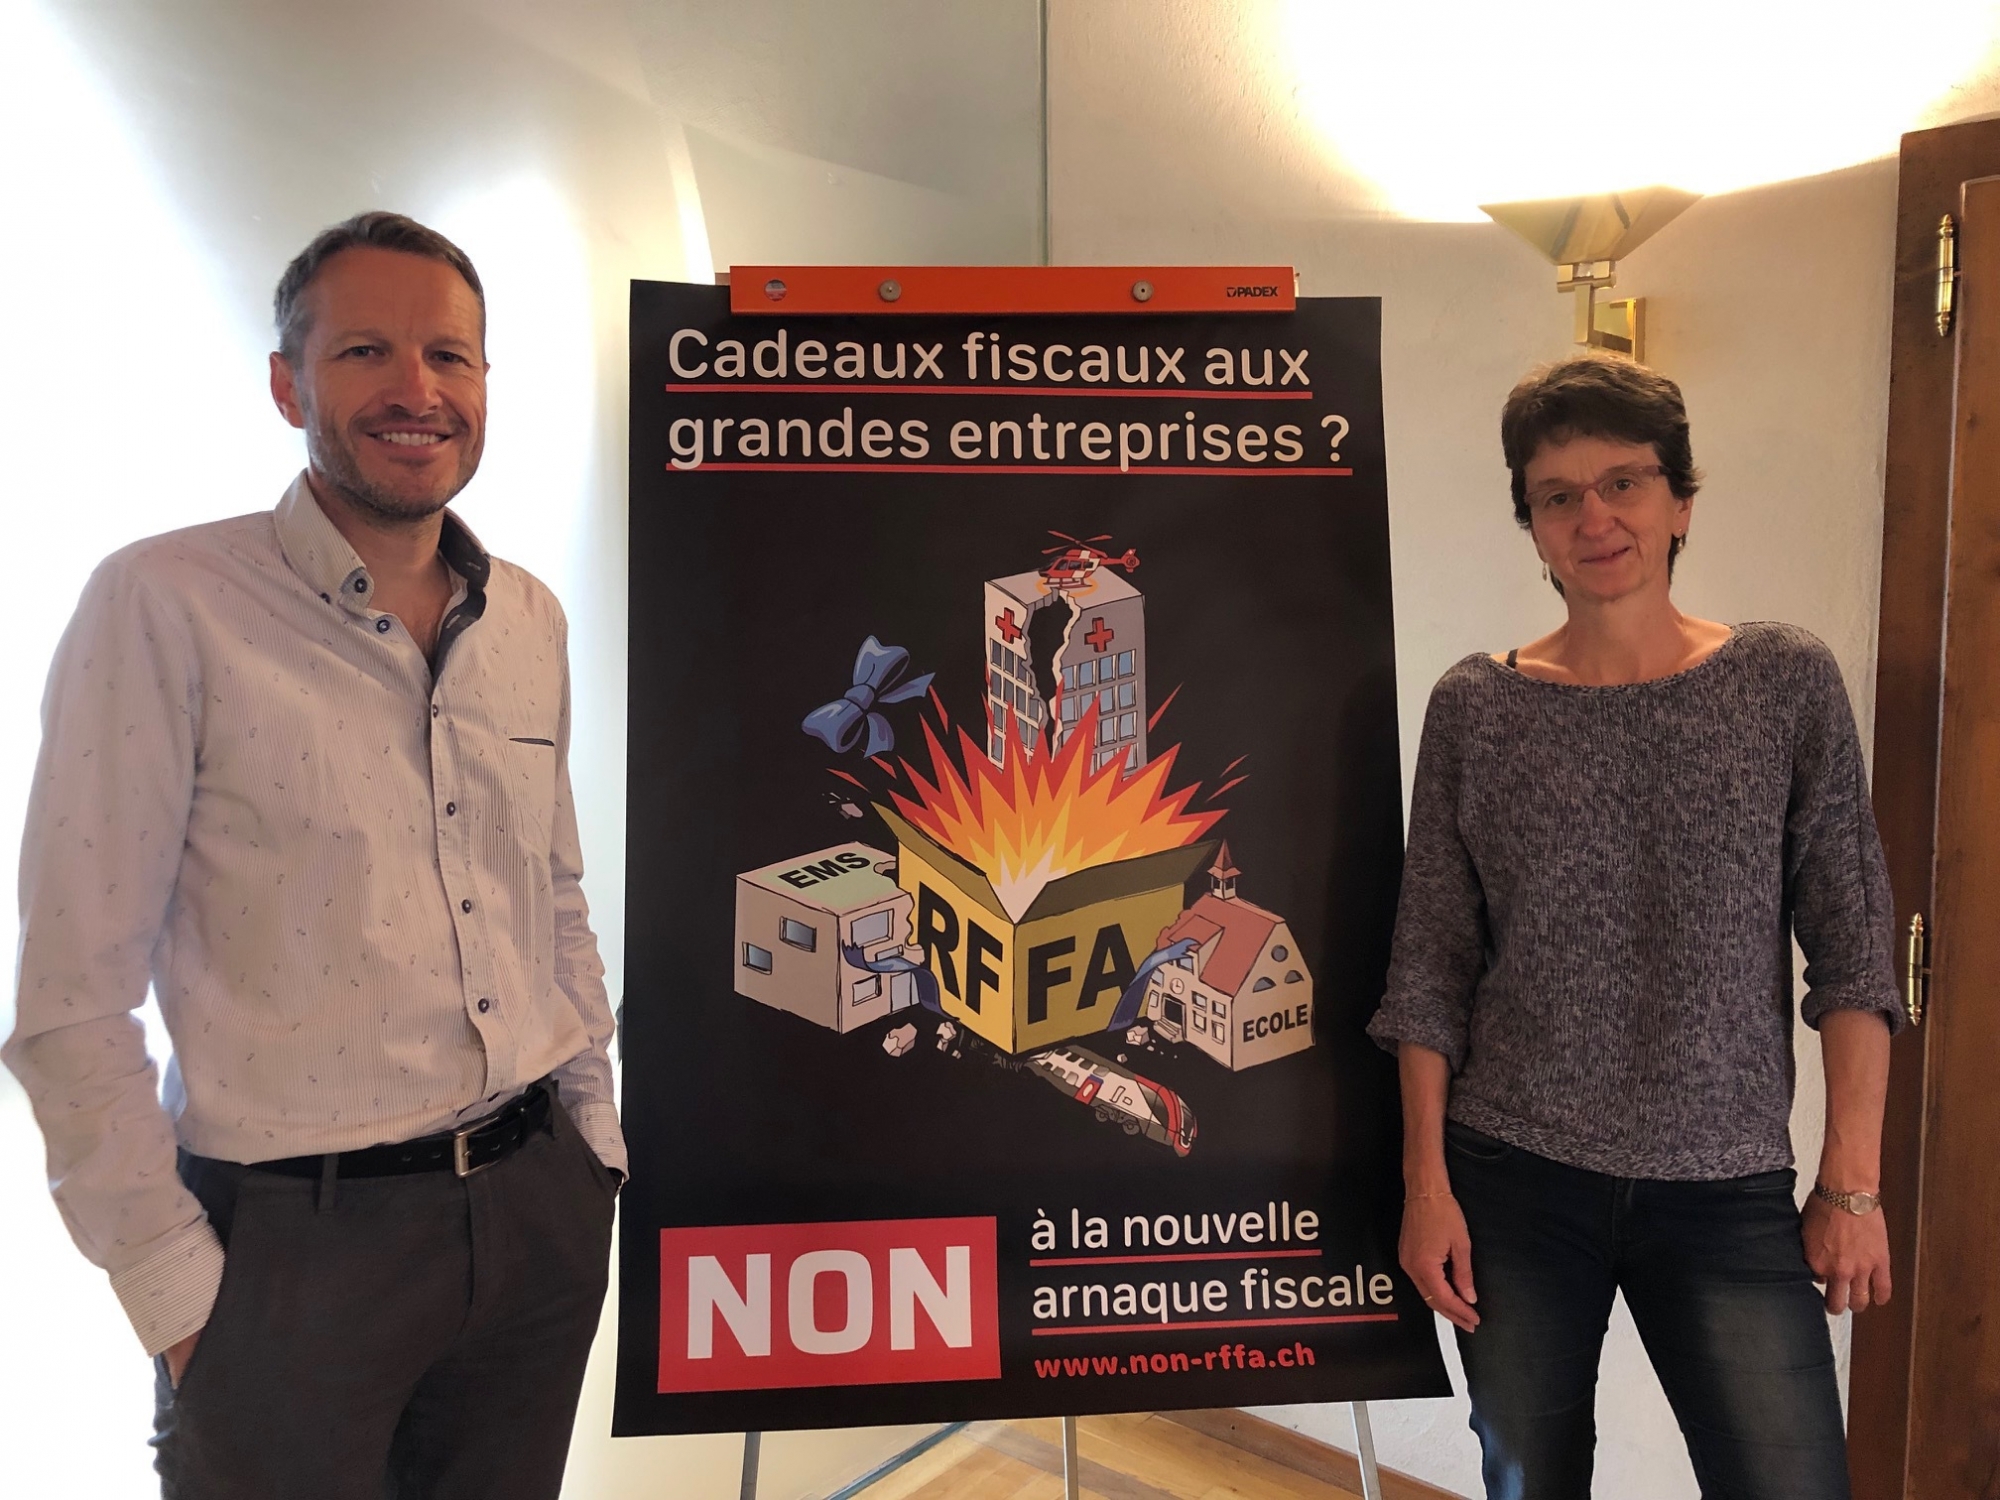 La députée Nathalie Cretton et le conseiller municipal Christophe Clivaz ont présenté les arguments des Verts contre la réforme fiscale des entreprises.